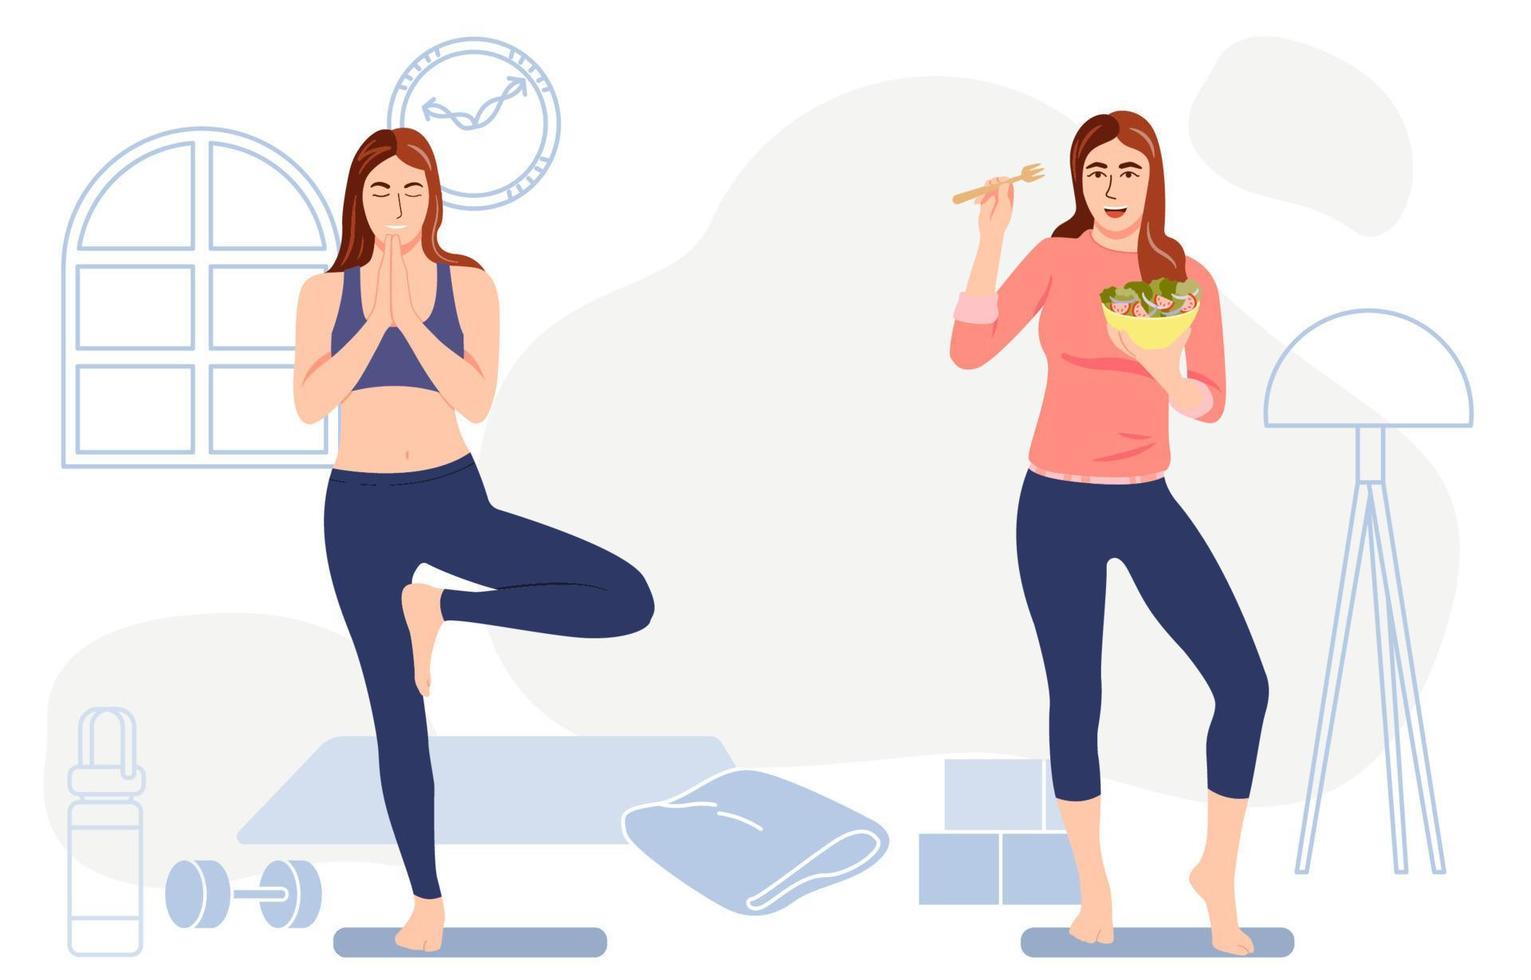 gezonde vrouw oefent door yoga en eet een salade, controleert gewicht, gezonde levensstijl concept vectorillustratie. vector